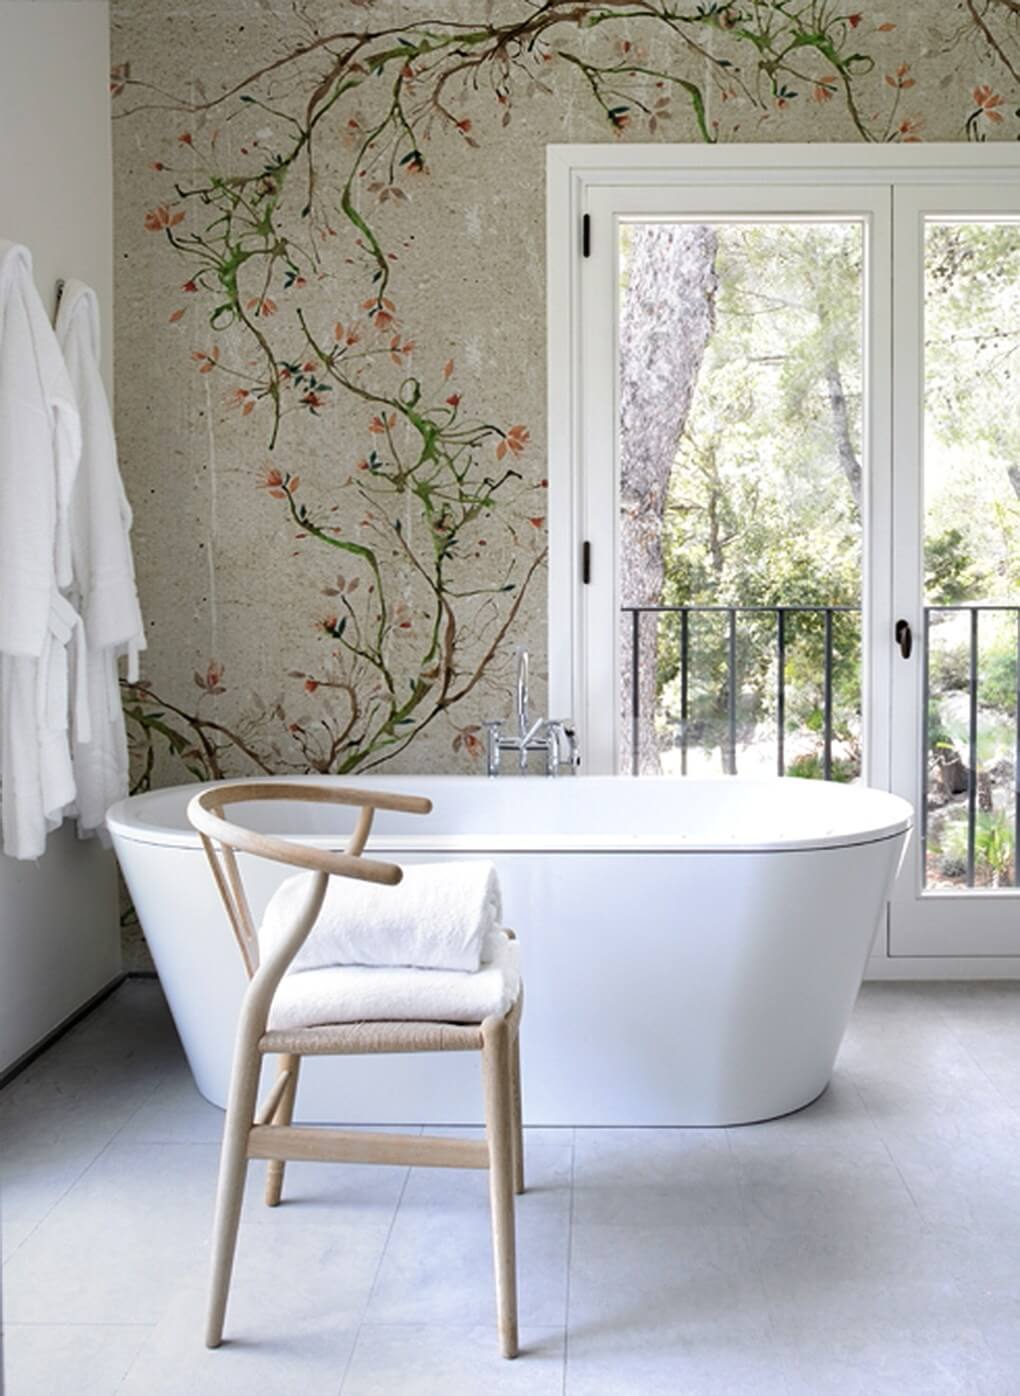 Badewanne und Holzstuhl vor Wand mit Wall and Deco Tapete mit lieblichen Blumenranken